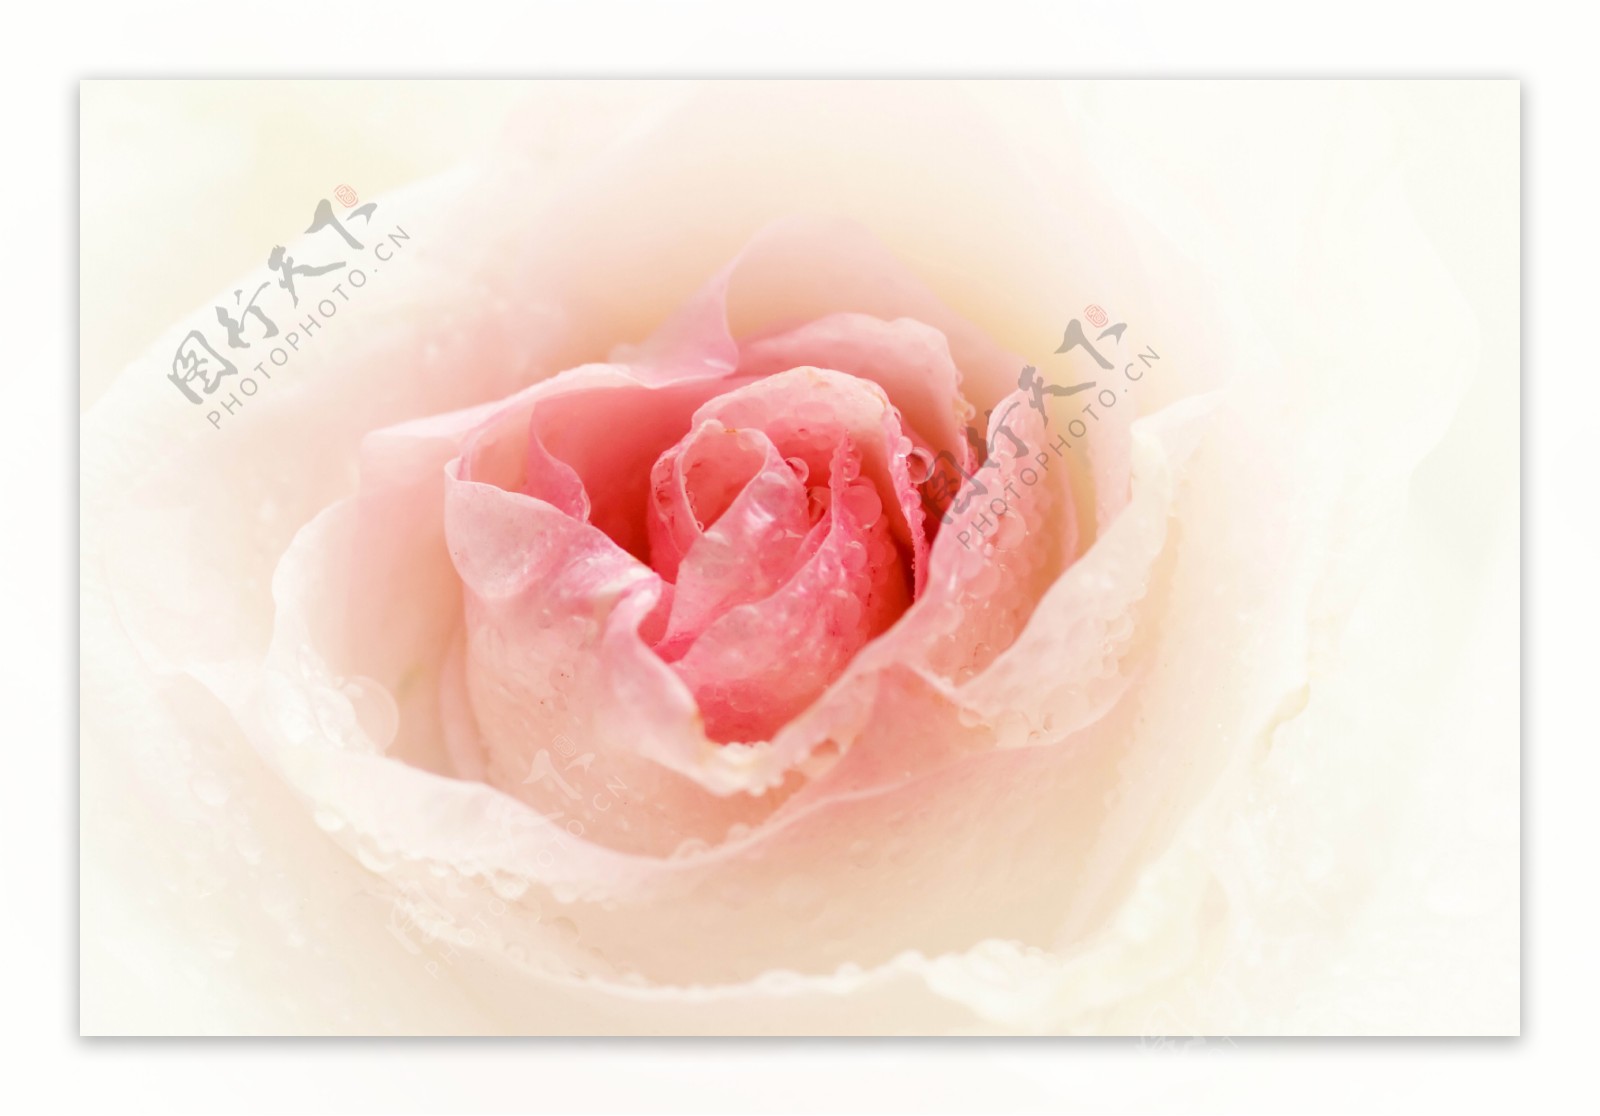 粉红色玫瑰花特写图片